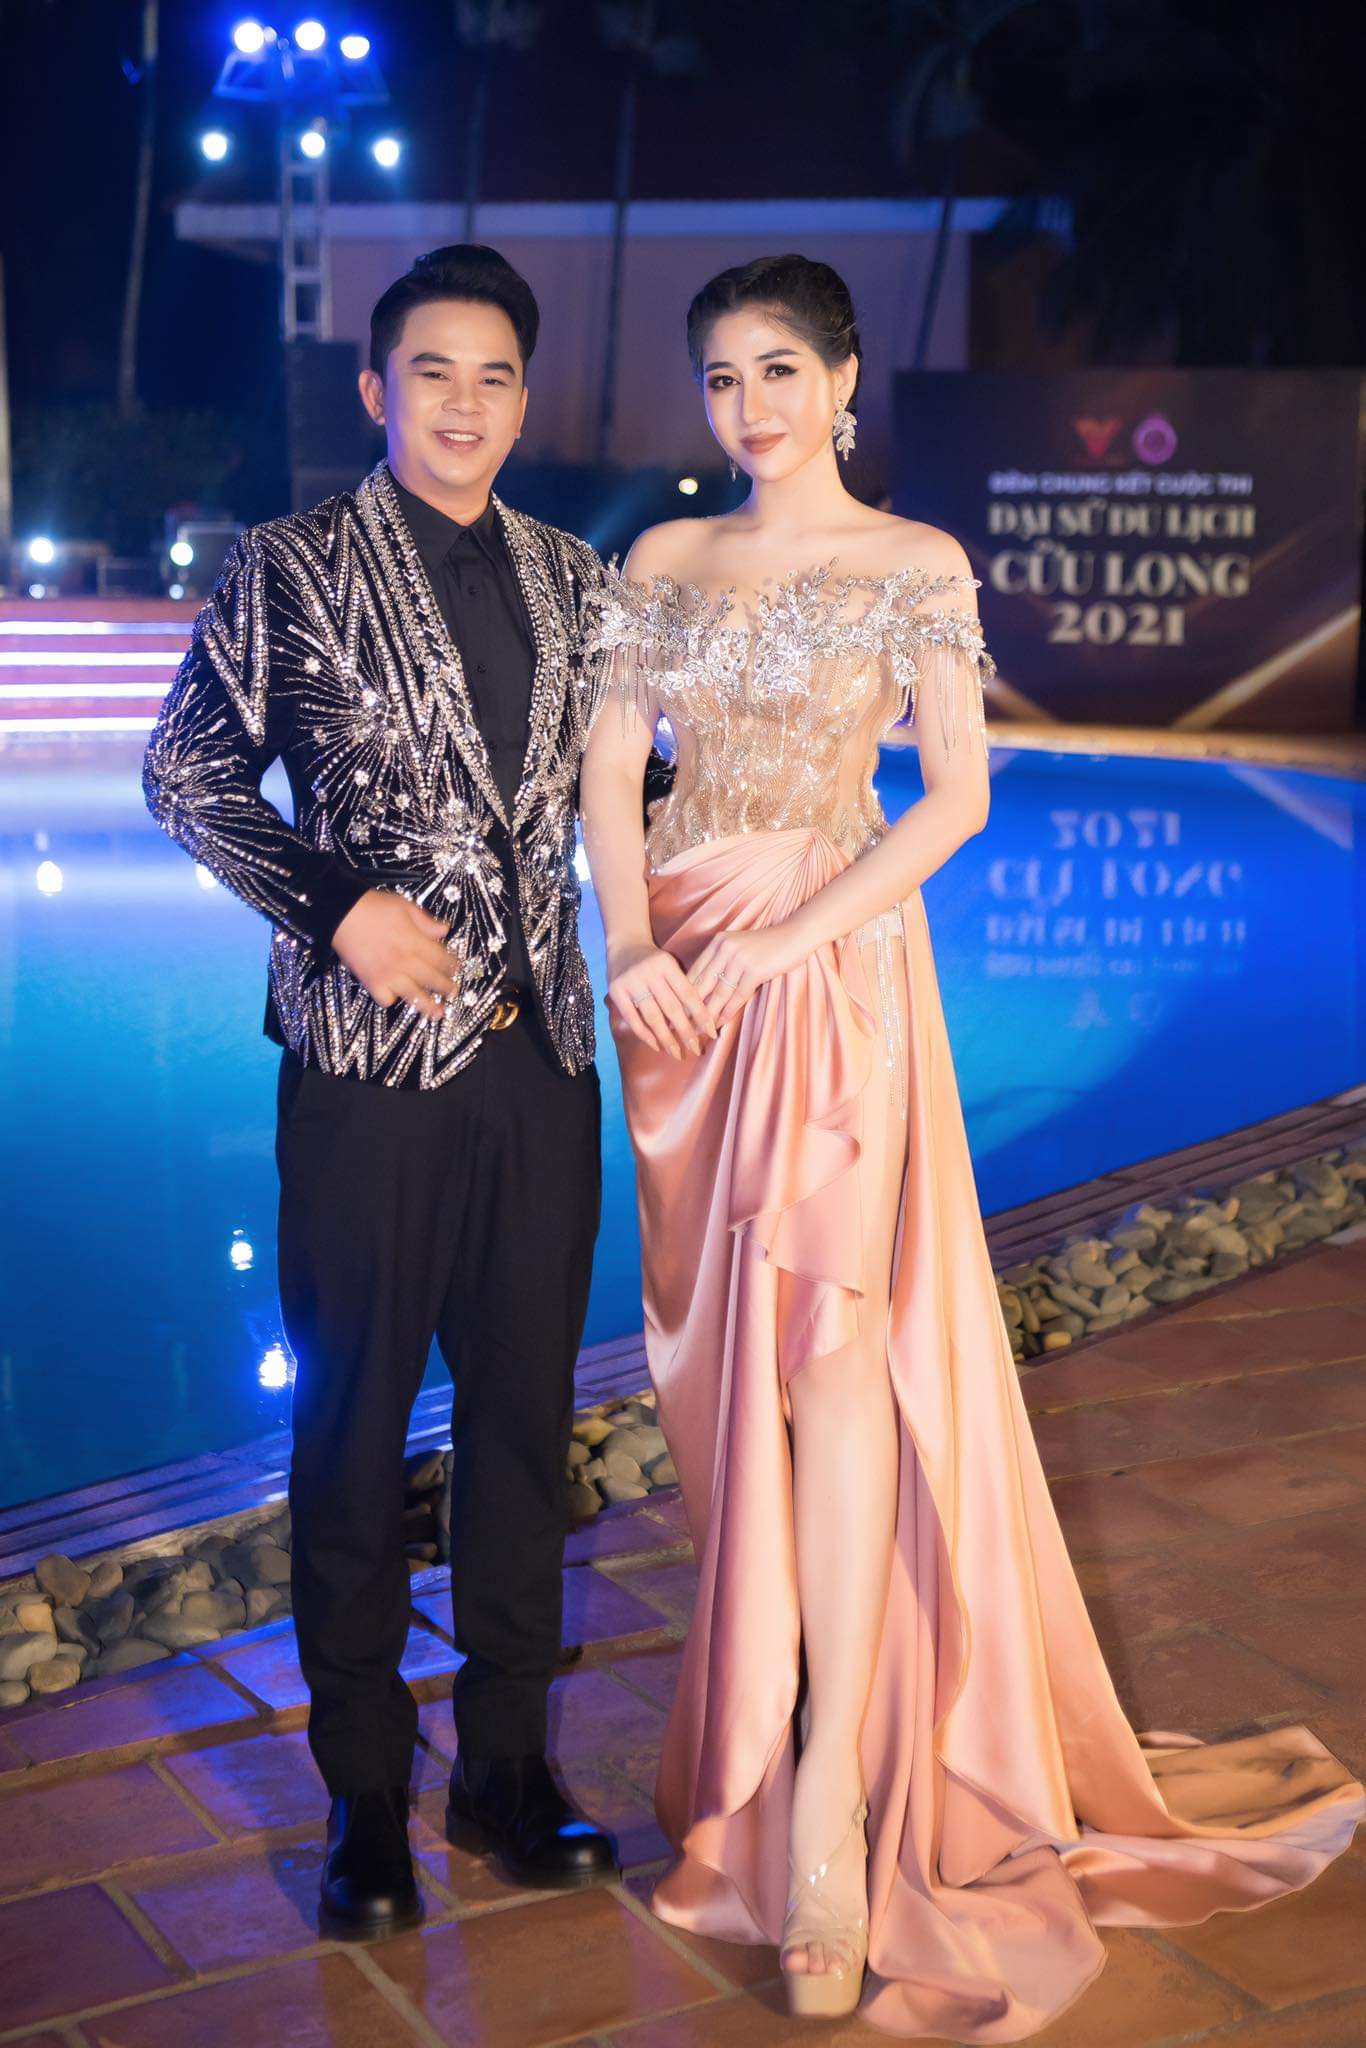 Ca sỹ Quốc Kháng chụp cùng hoa hậu Nhân ái Huỳnh Trang